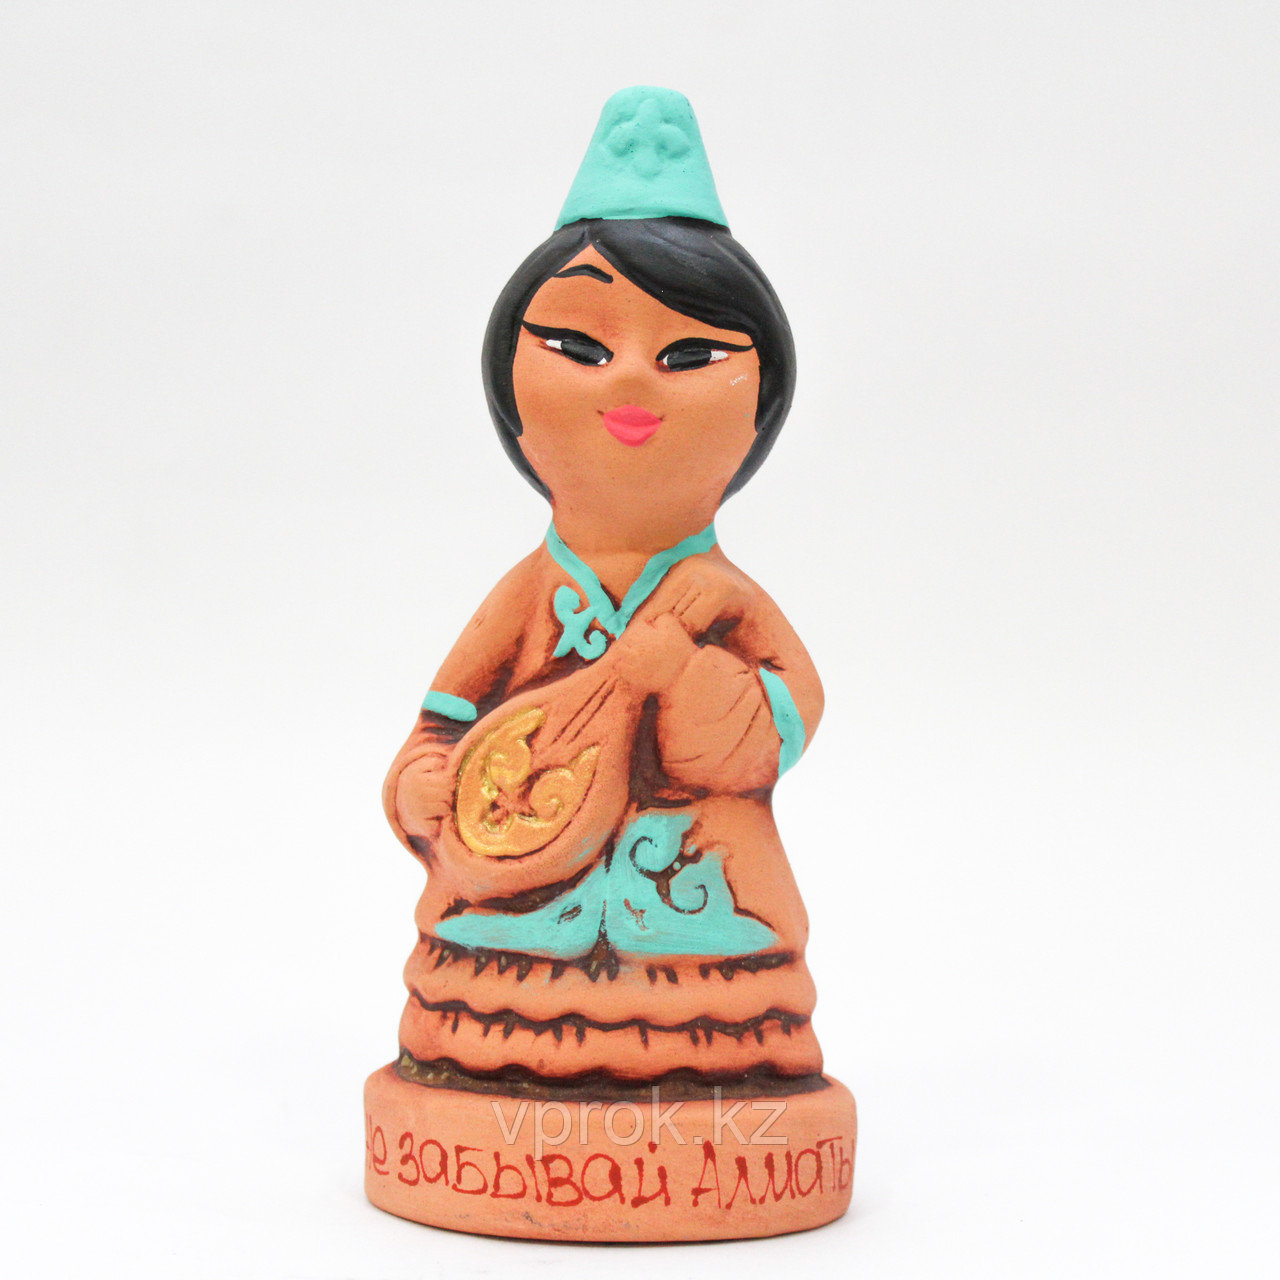 Статуэтка глиняная "Девушка Инкар с домброй", 13 см, фото 1